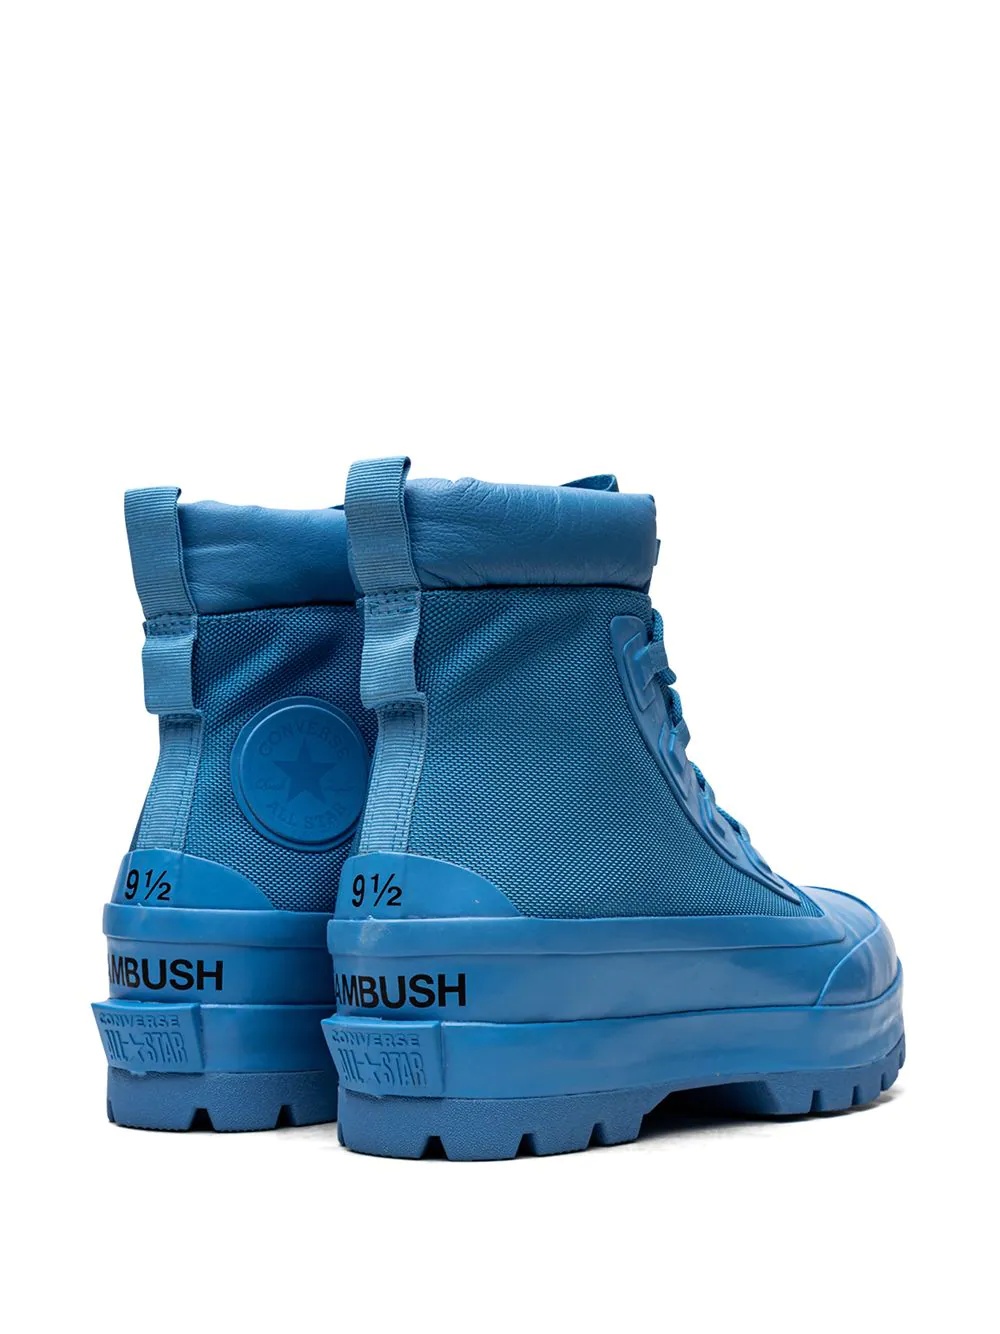 x AMBUSH Chuck Taylor All-Star "Blue" boots - 3